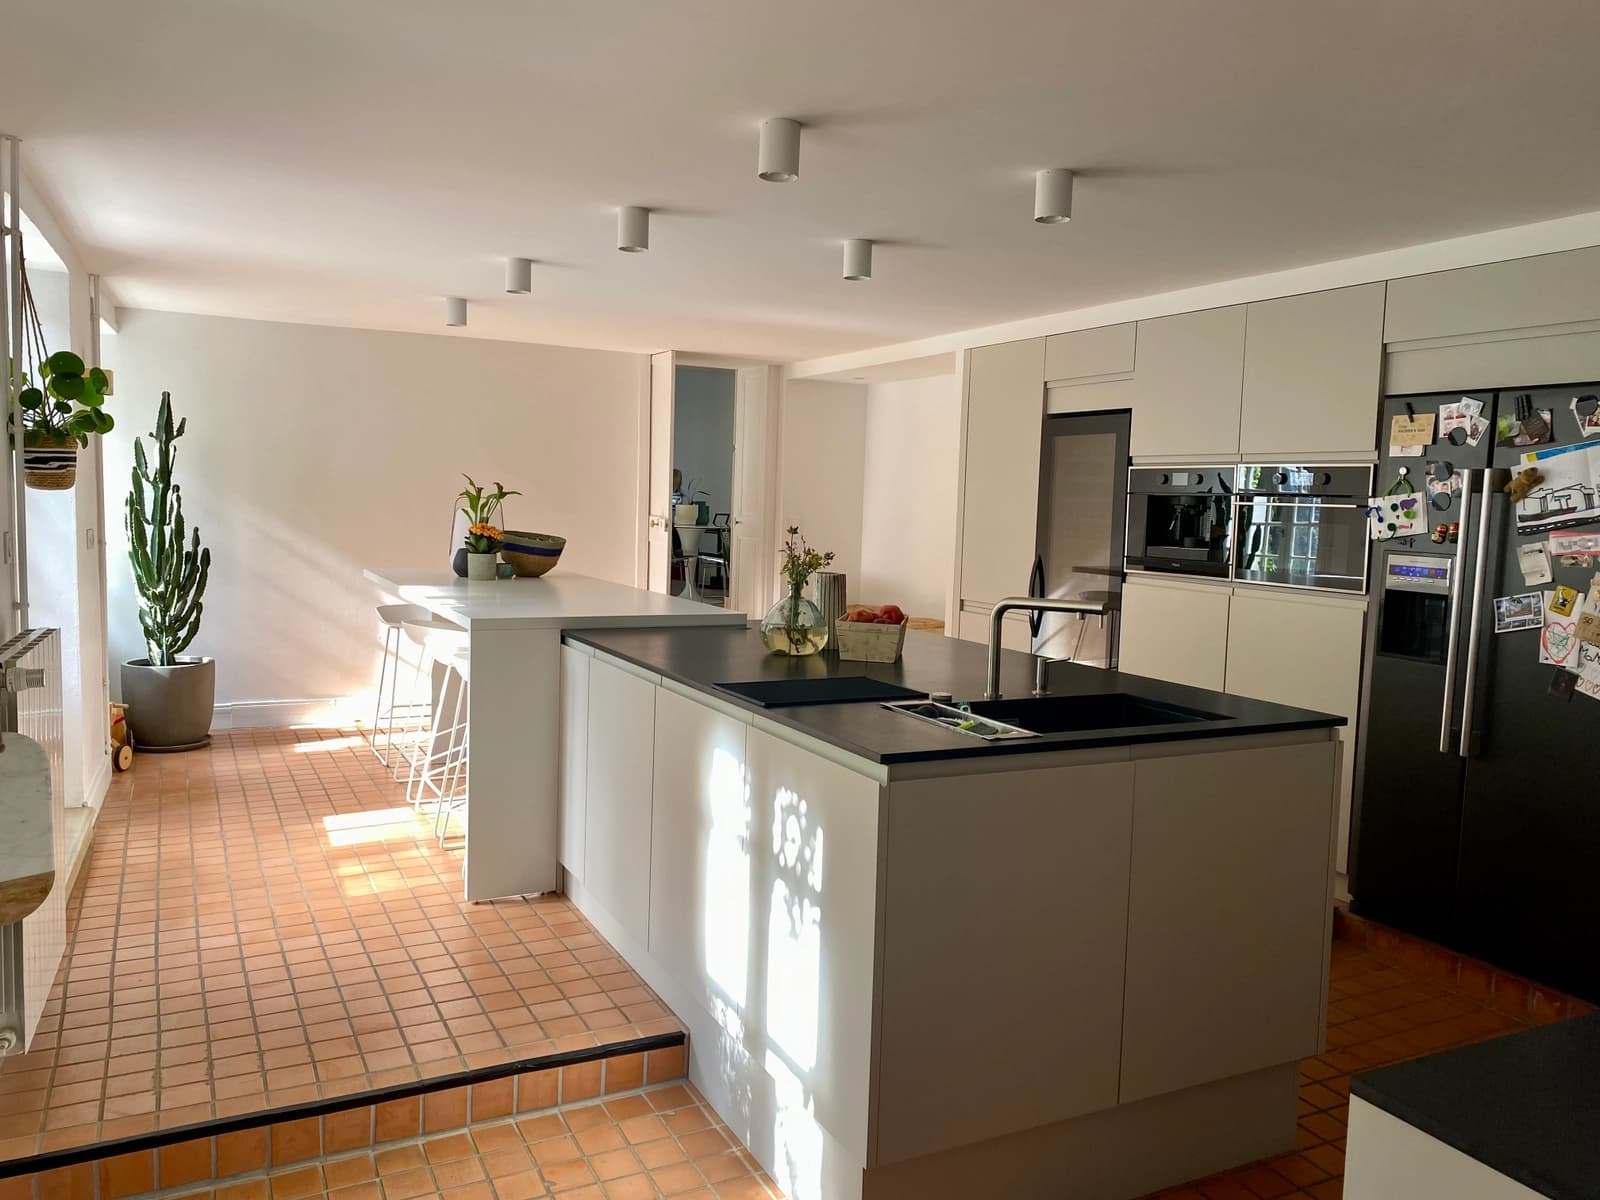 Kitchen dentro Casa con encanto a 15 minutos de La Rochelle - 1